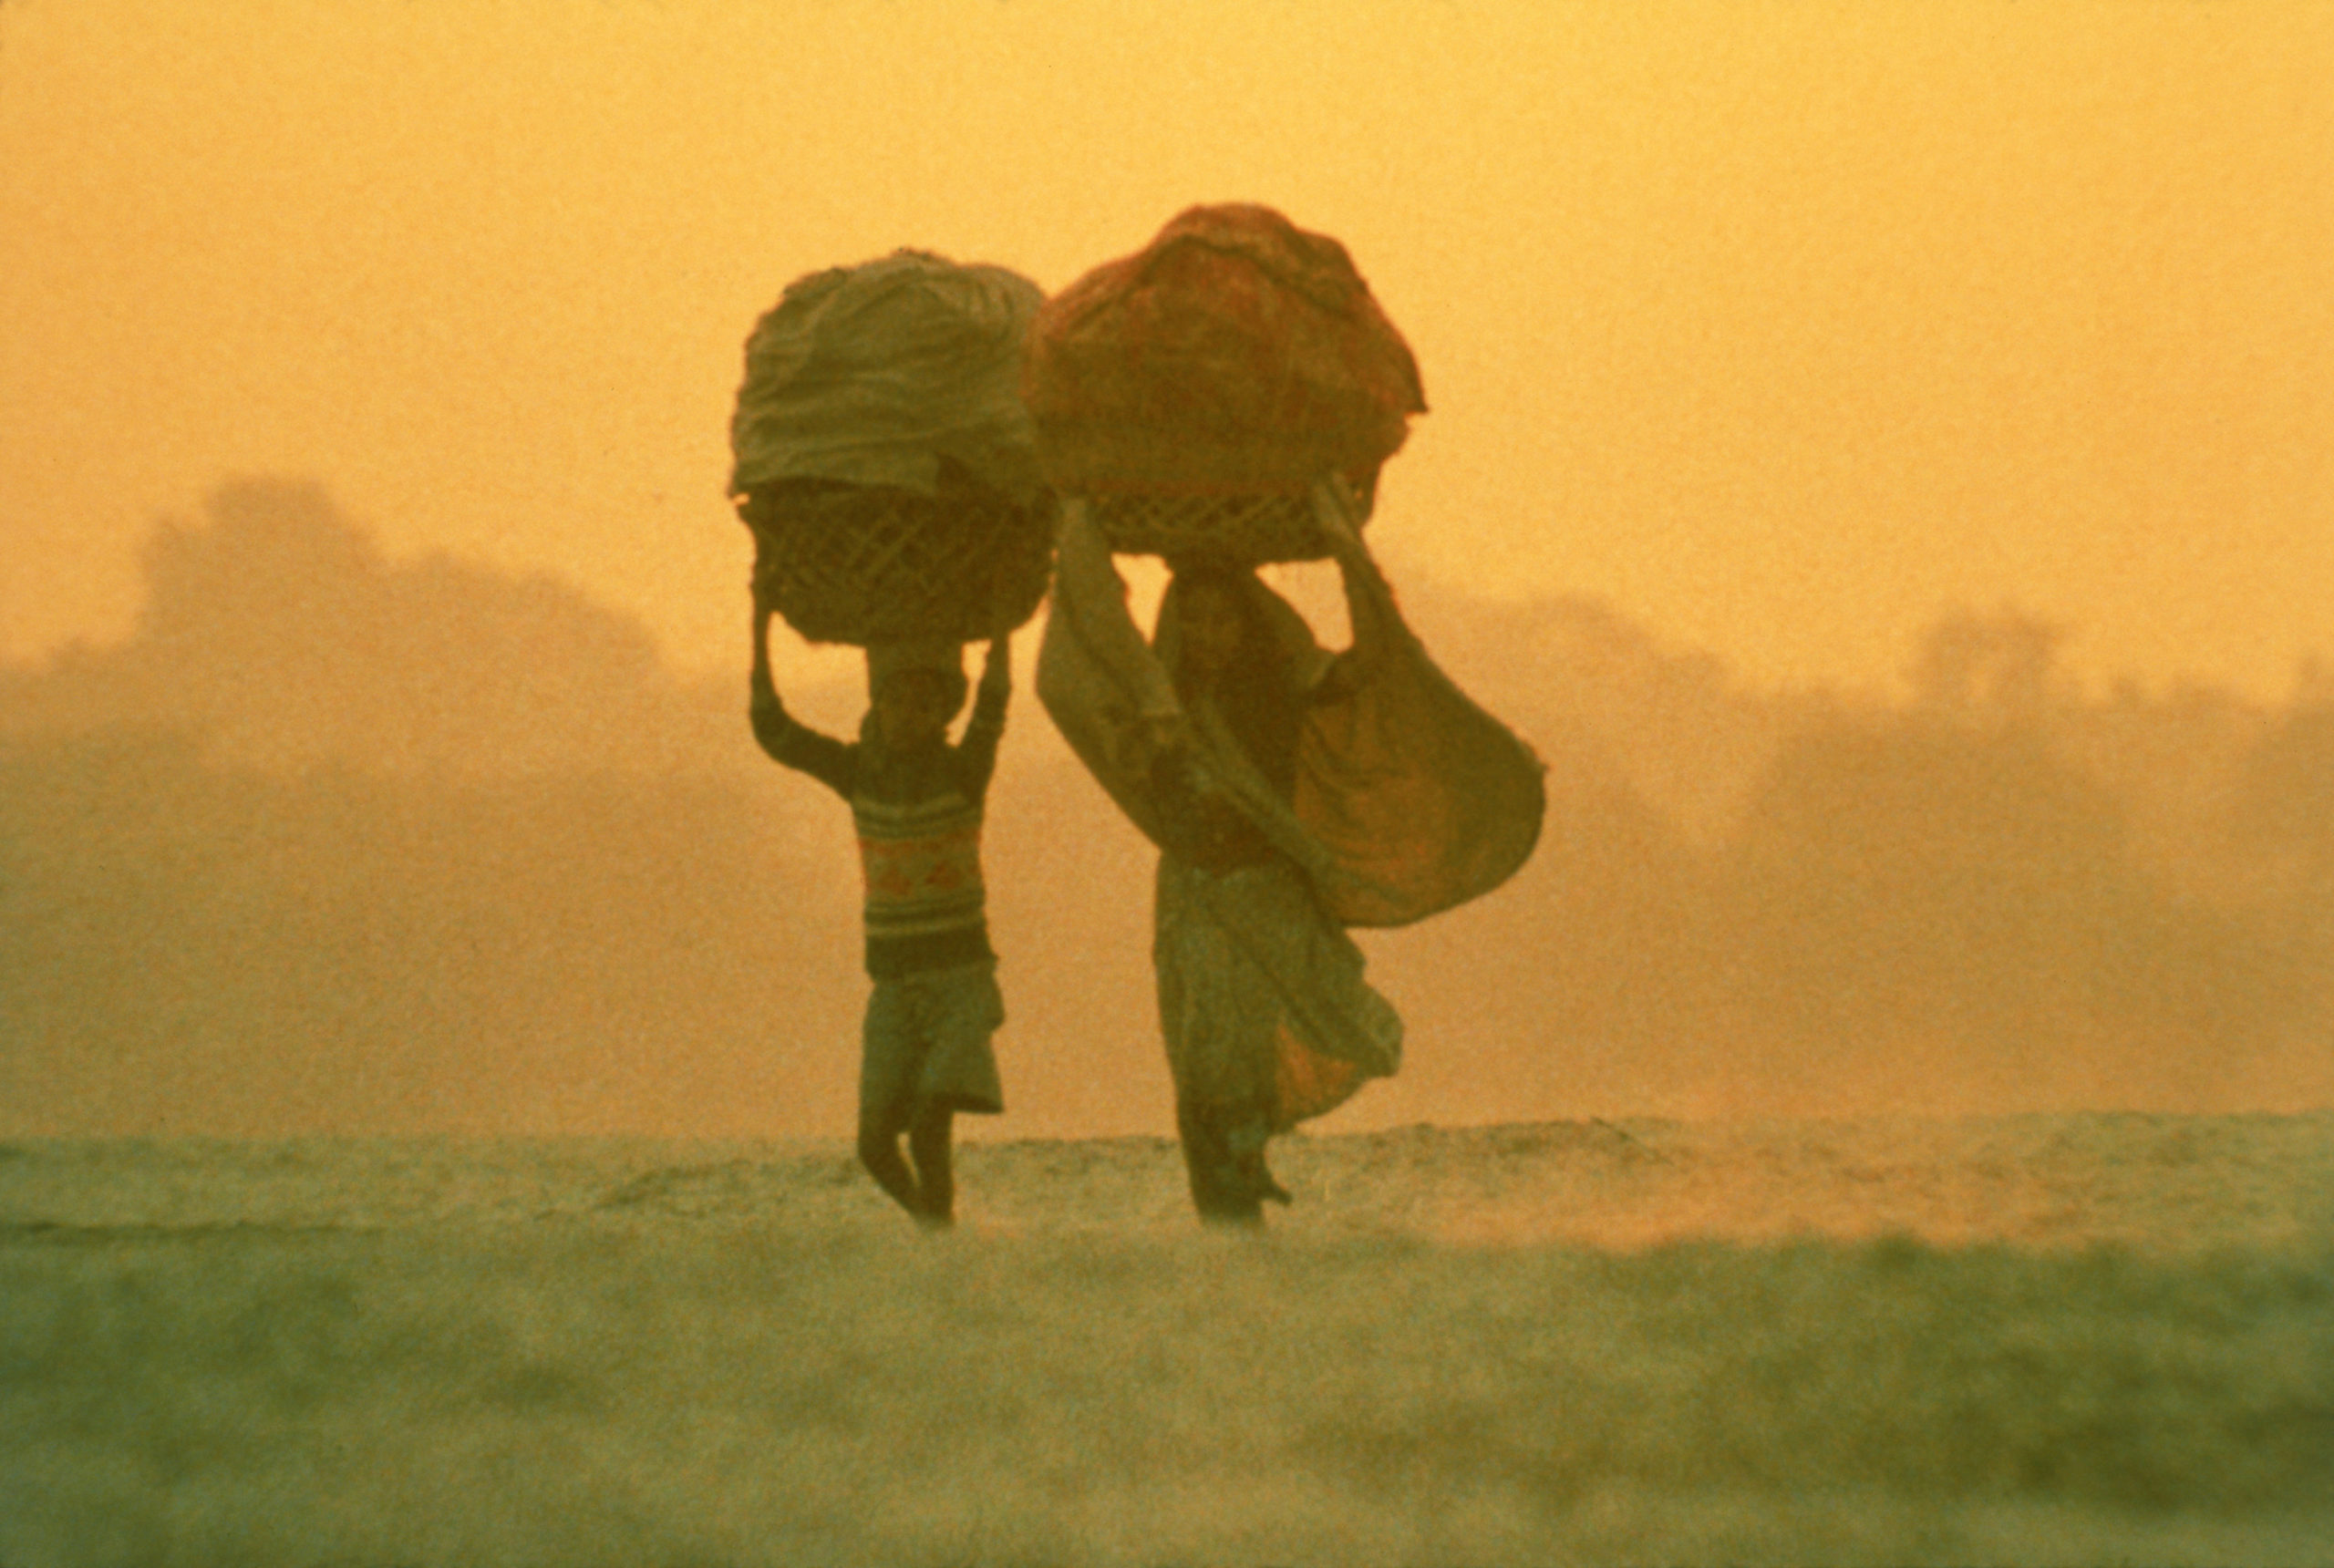 Kadr filmu "Powaqqatsi", przedstawiający kobietę i chłopca niosących kosze na głowie, pośród pustynnego terenu.